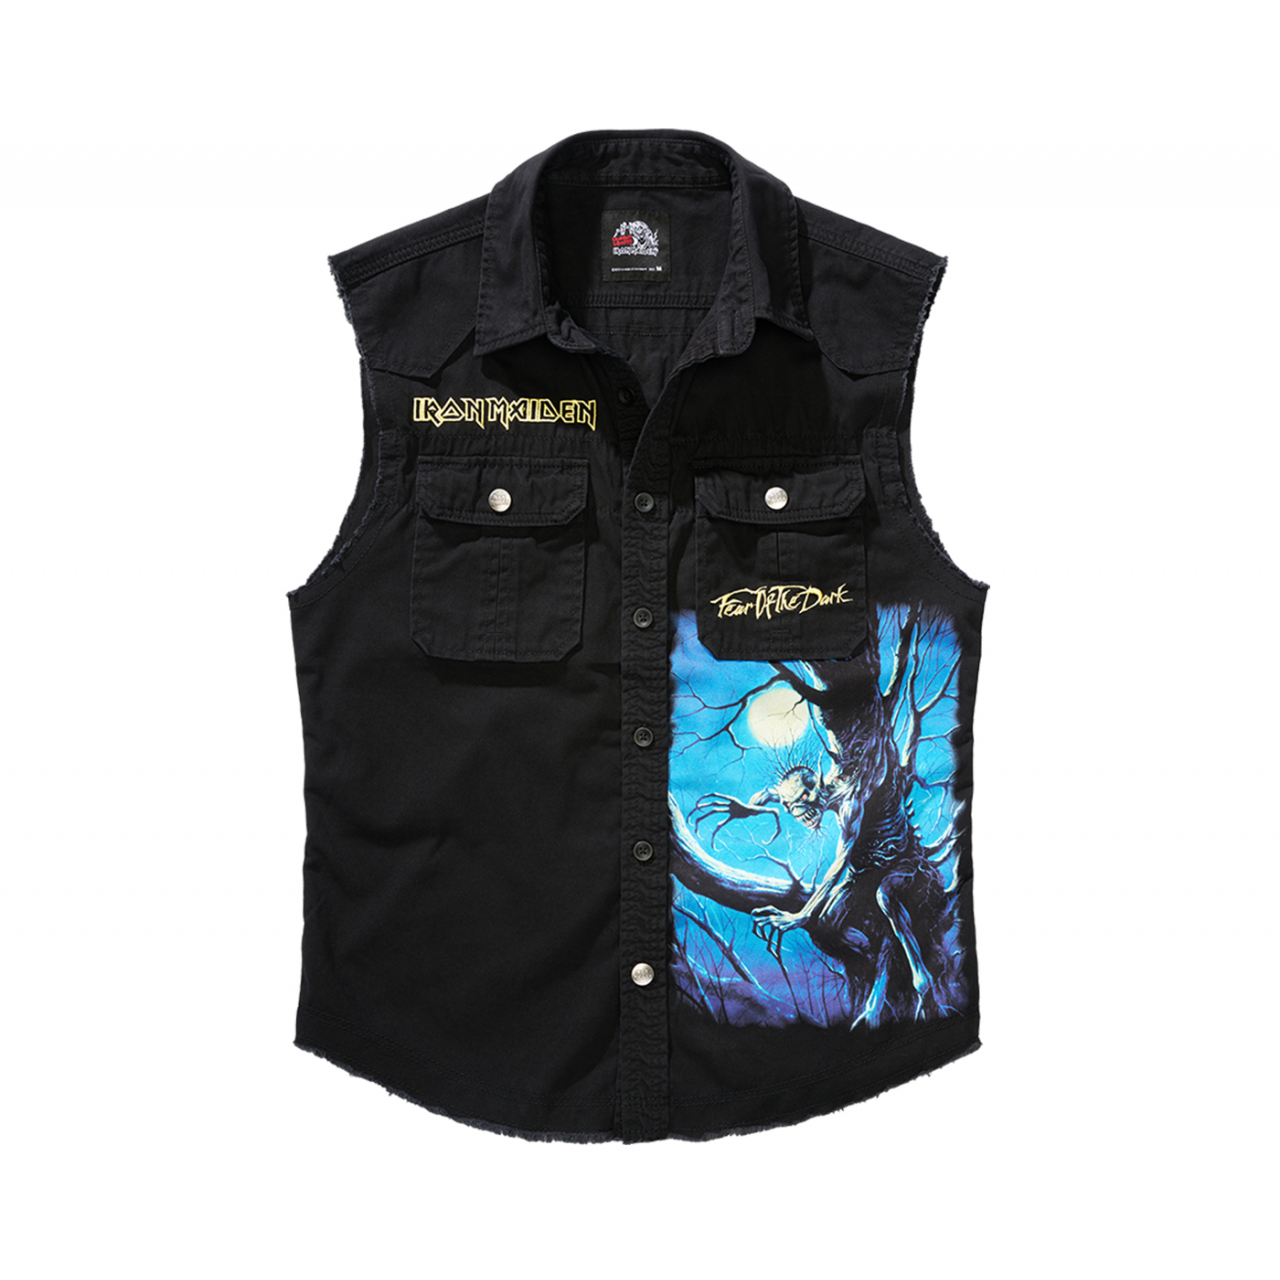 Košile Brandit Iron Maiden Vintage Shirt Sleeveless FOTD - černá, 3XL